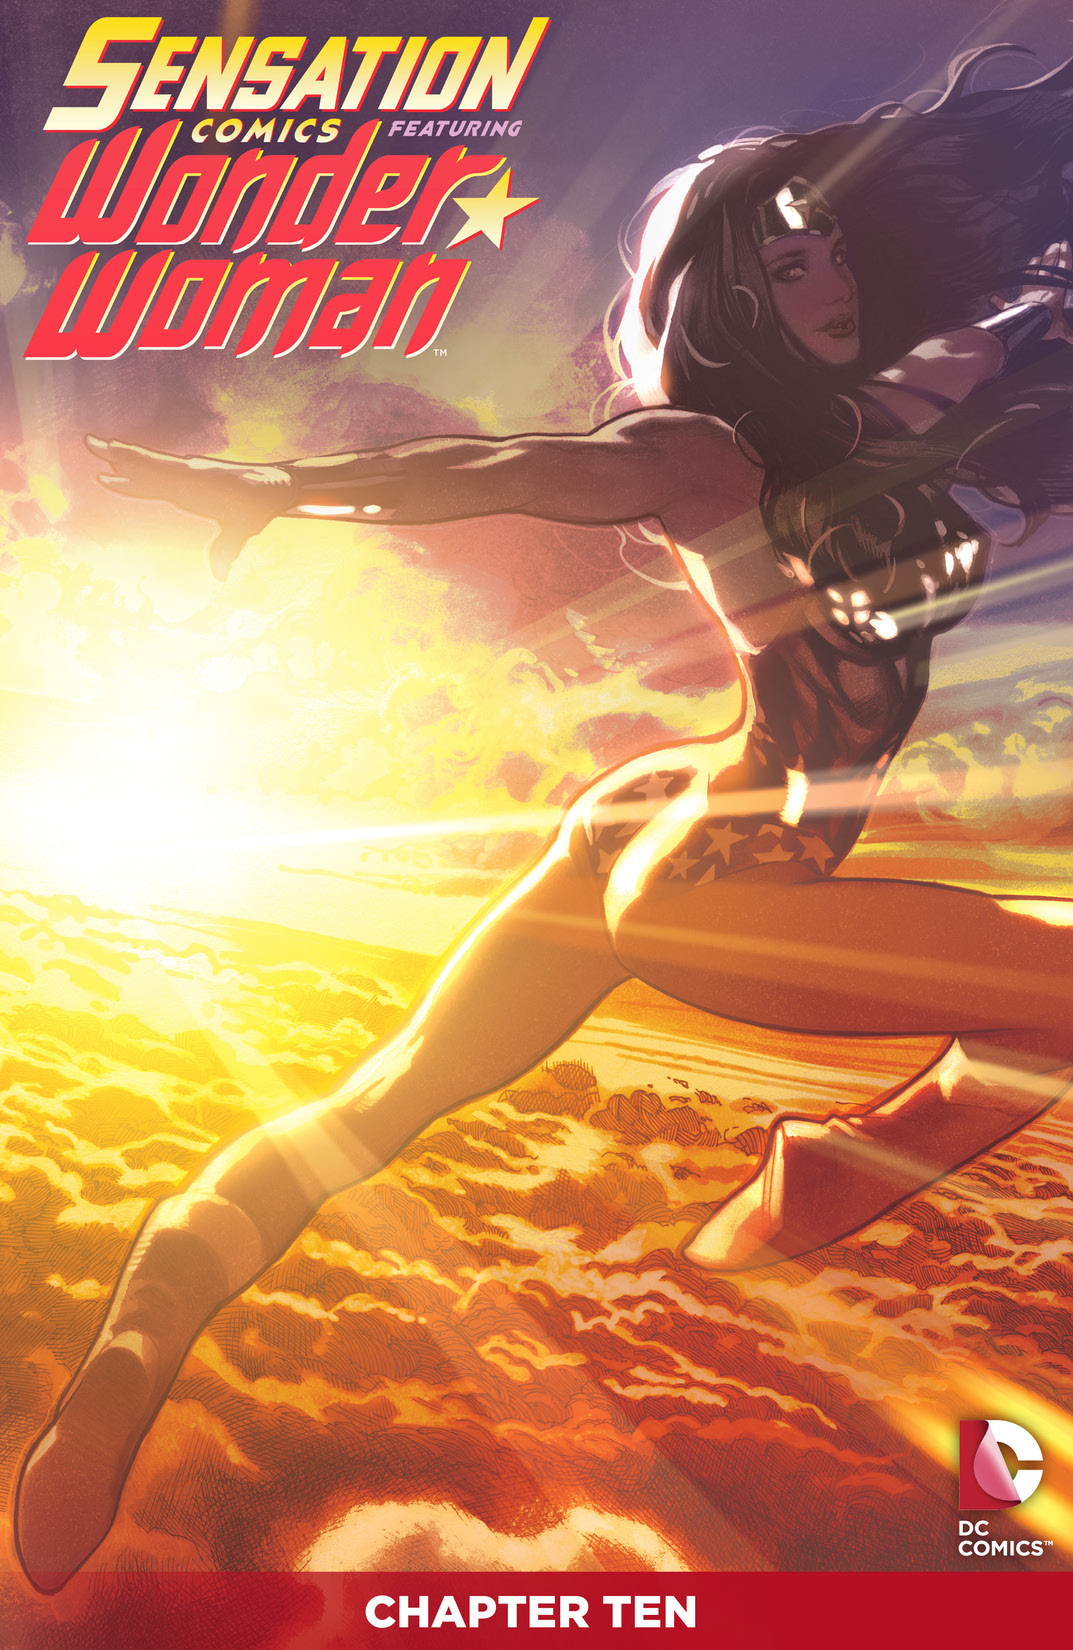 Sensation Comics Featuring Wonder Woman #10 preview images